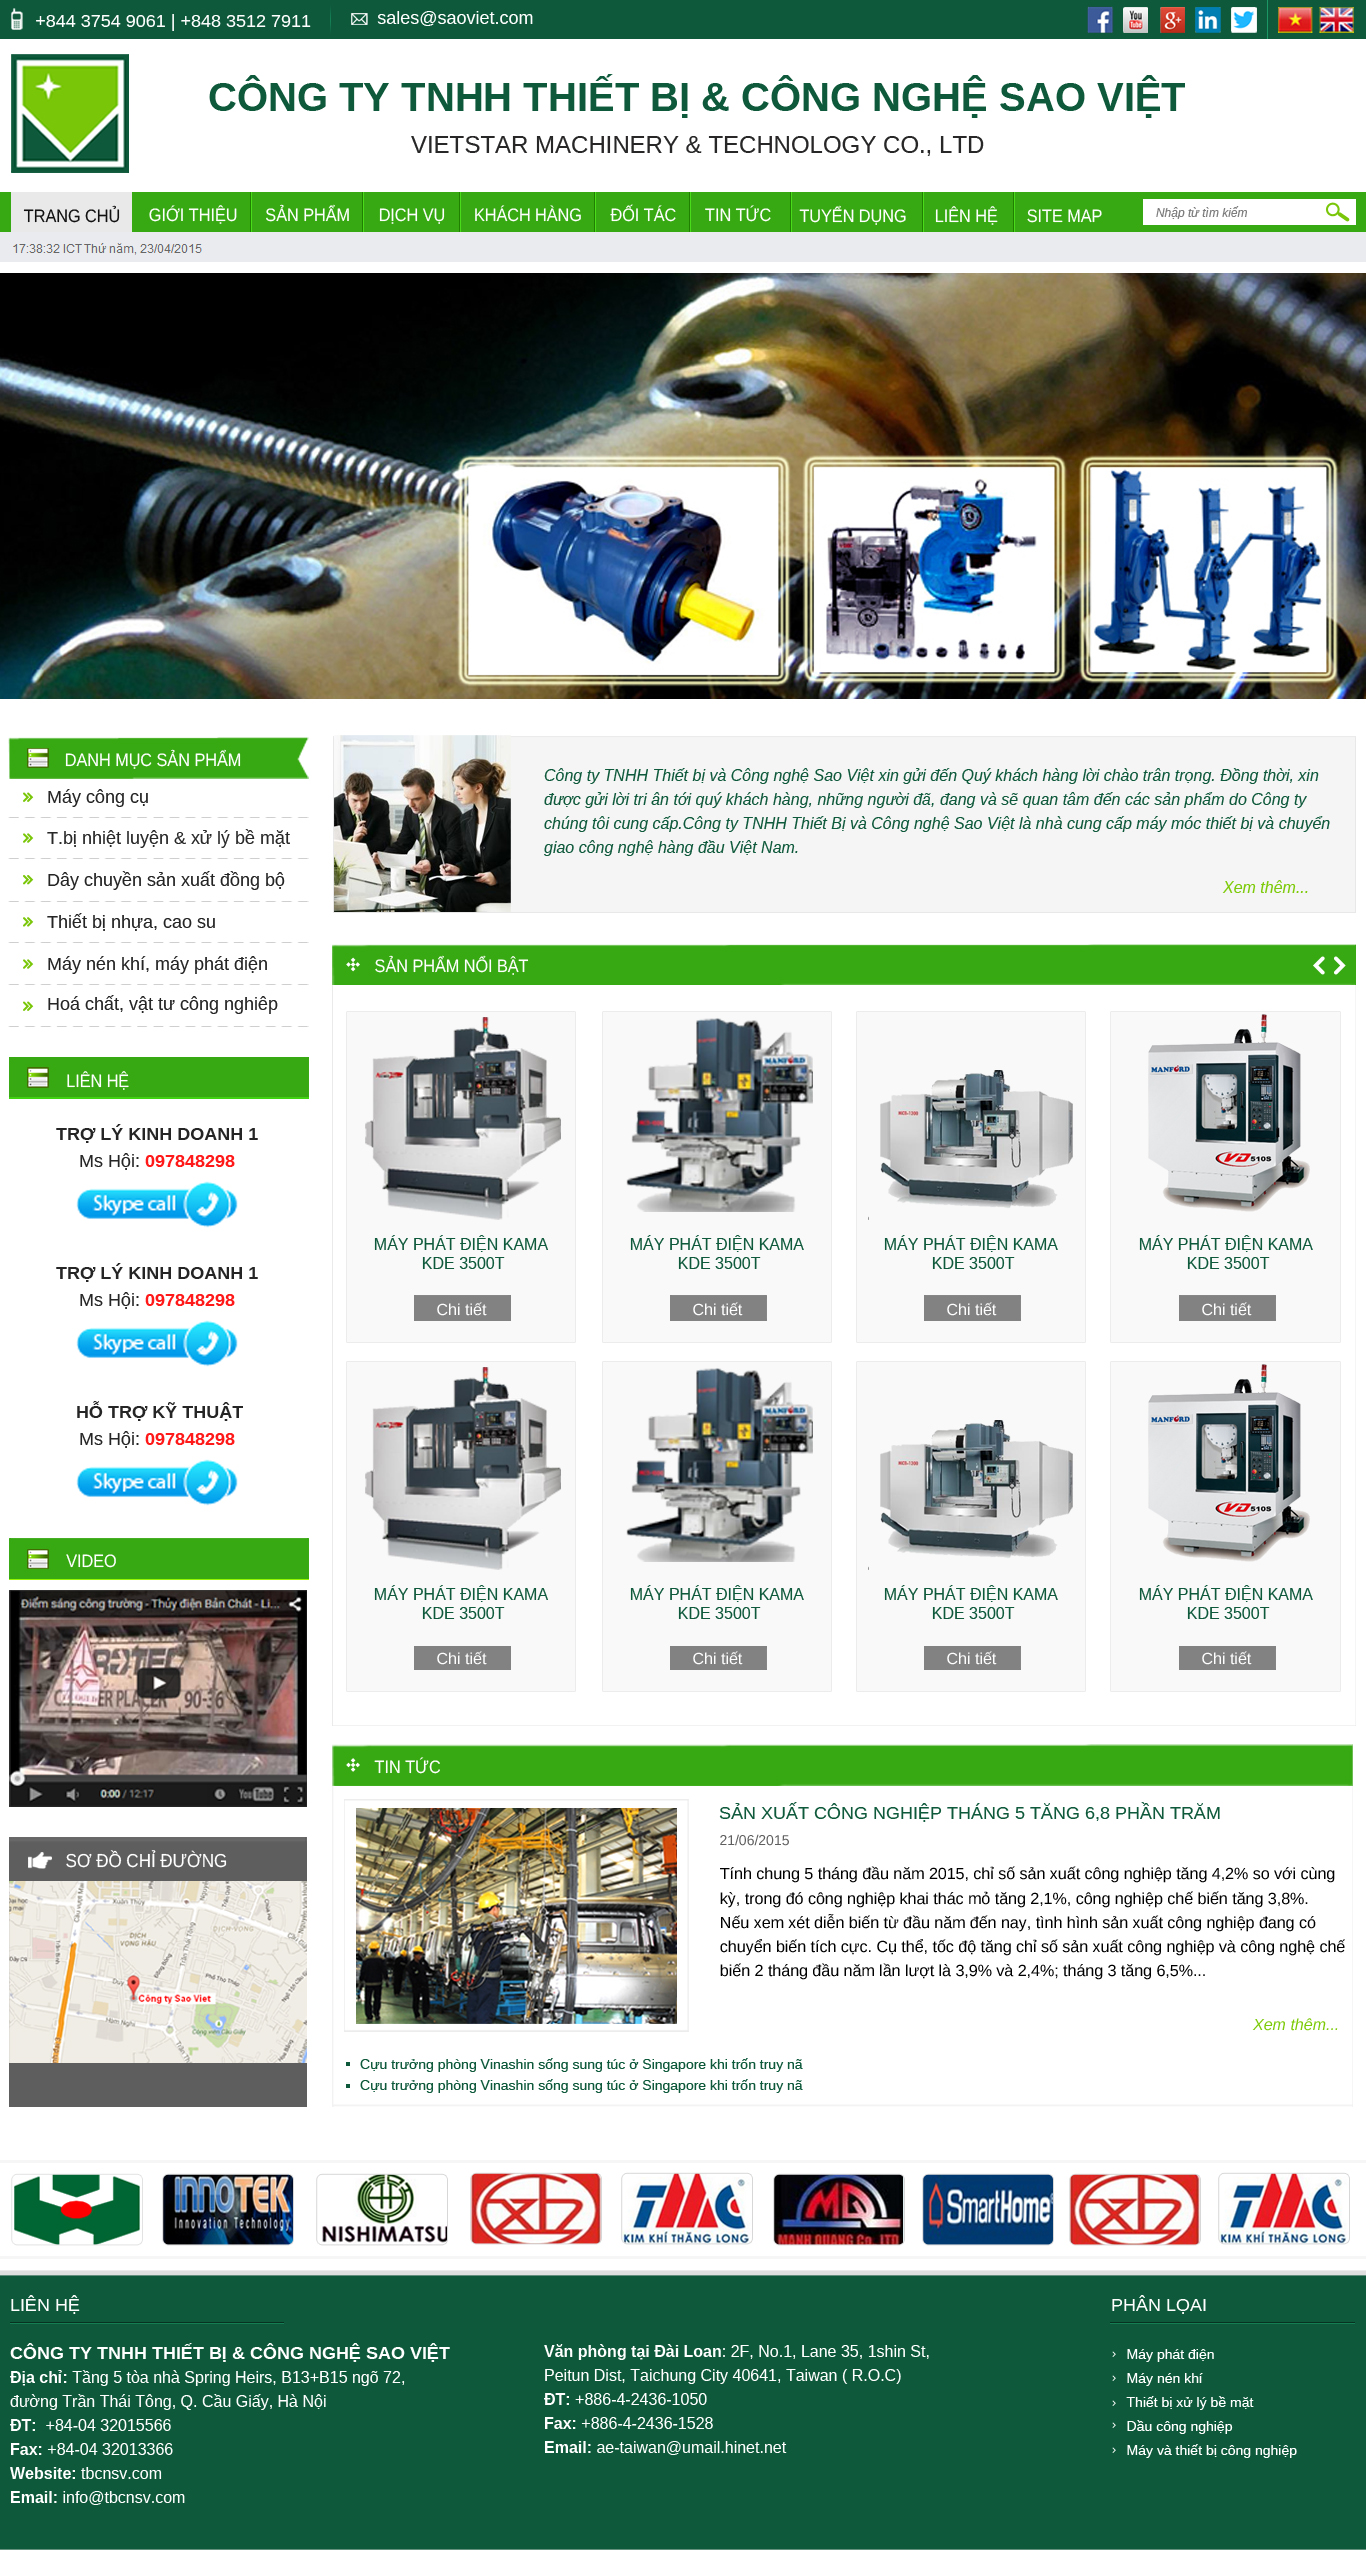 Thiết kế website công ty TNHH thiết bị và công nghệ Sao Việt